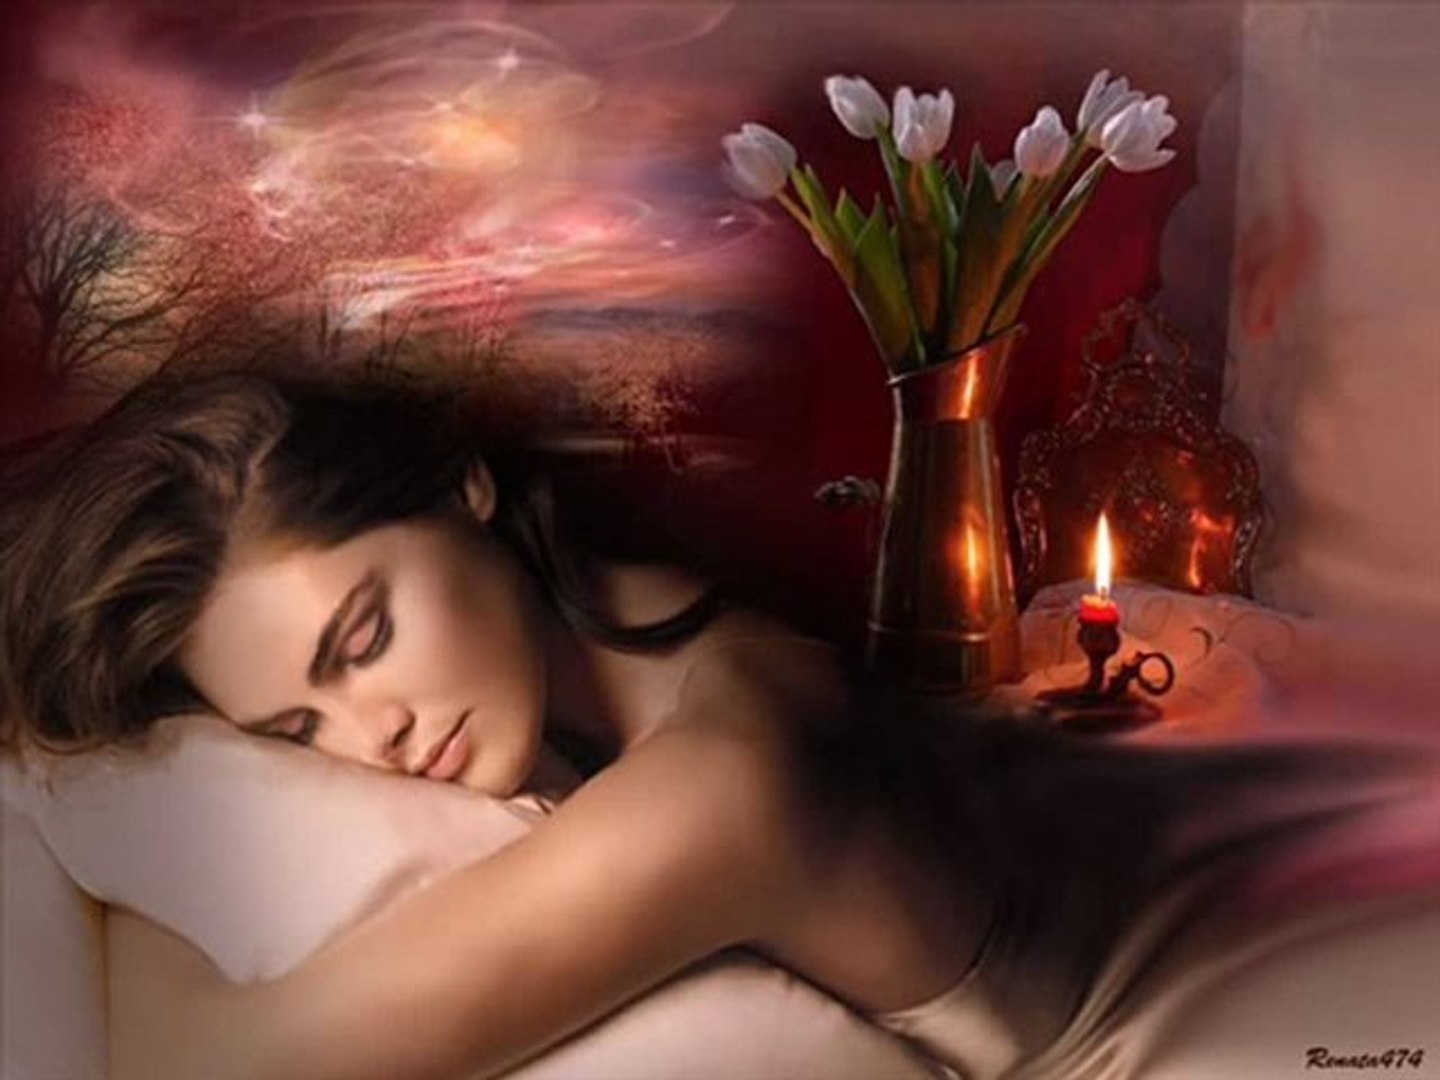 Доброй ночи романтично. Спокойной ночи нежные. Ночь нежна. Спокойной ночи нежных снов. Спокойной ночи романтические.